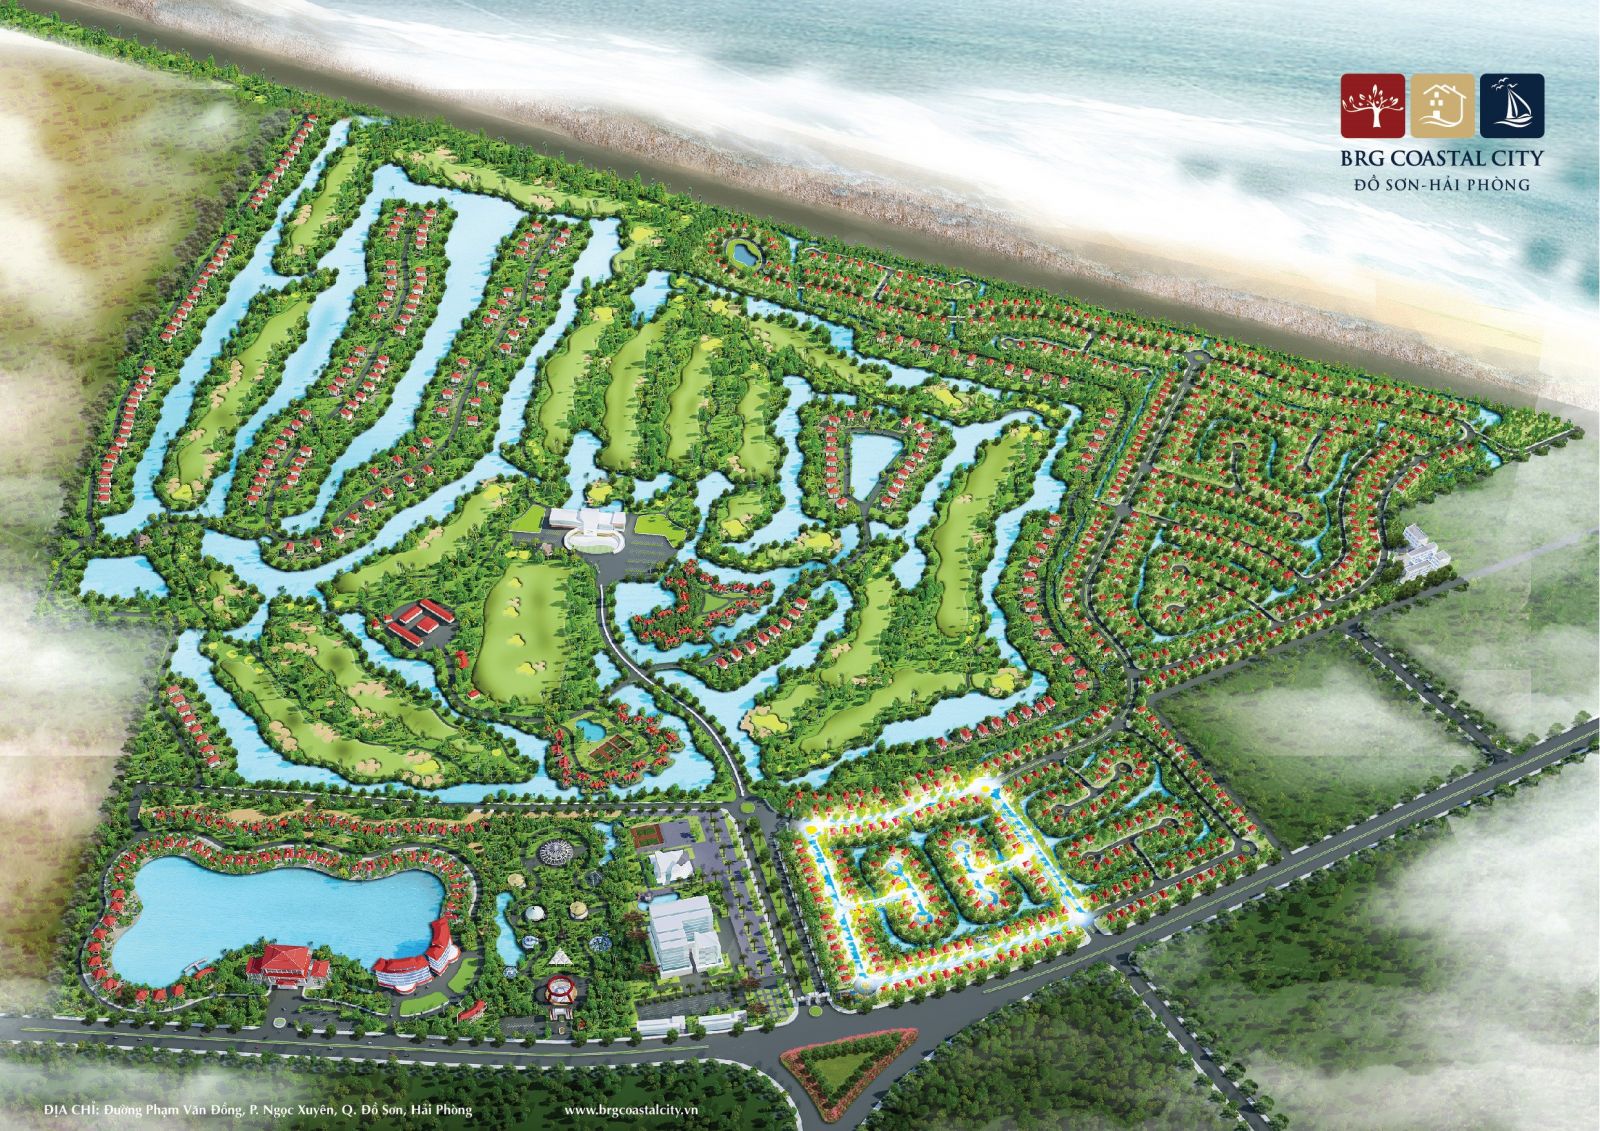 Dự án BRG Coastal City, một trong những dự án đang được nhiều nhà đầu tư chú ý tại Đồ Sơn, Hải Phòng thời gian gần đây